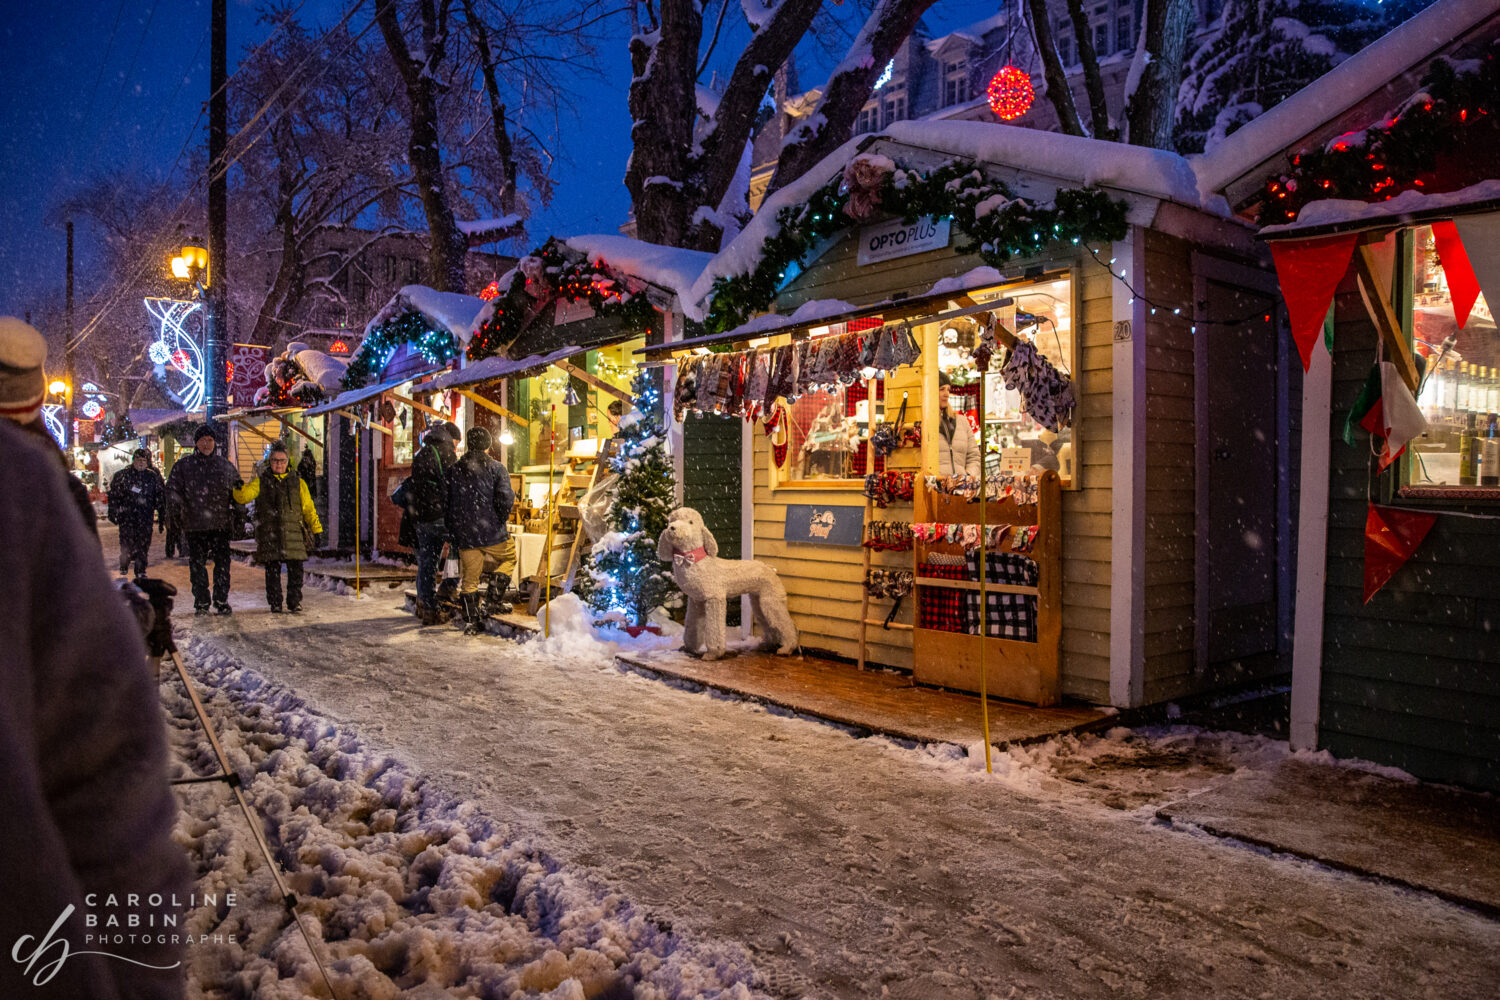 Marché de Noel extérieur, ont peu y voit des gens qui visite le marché, des décorations de Noel et de la neige